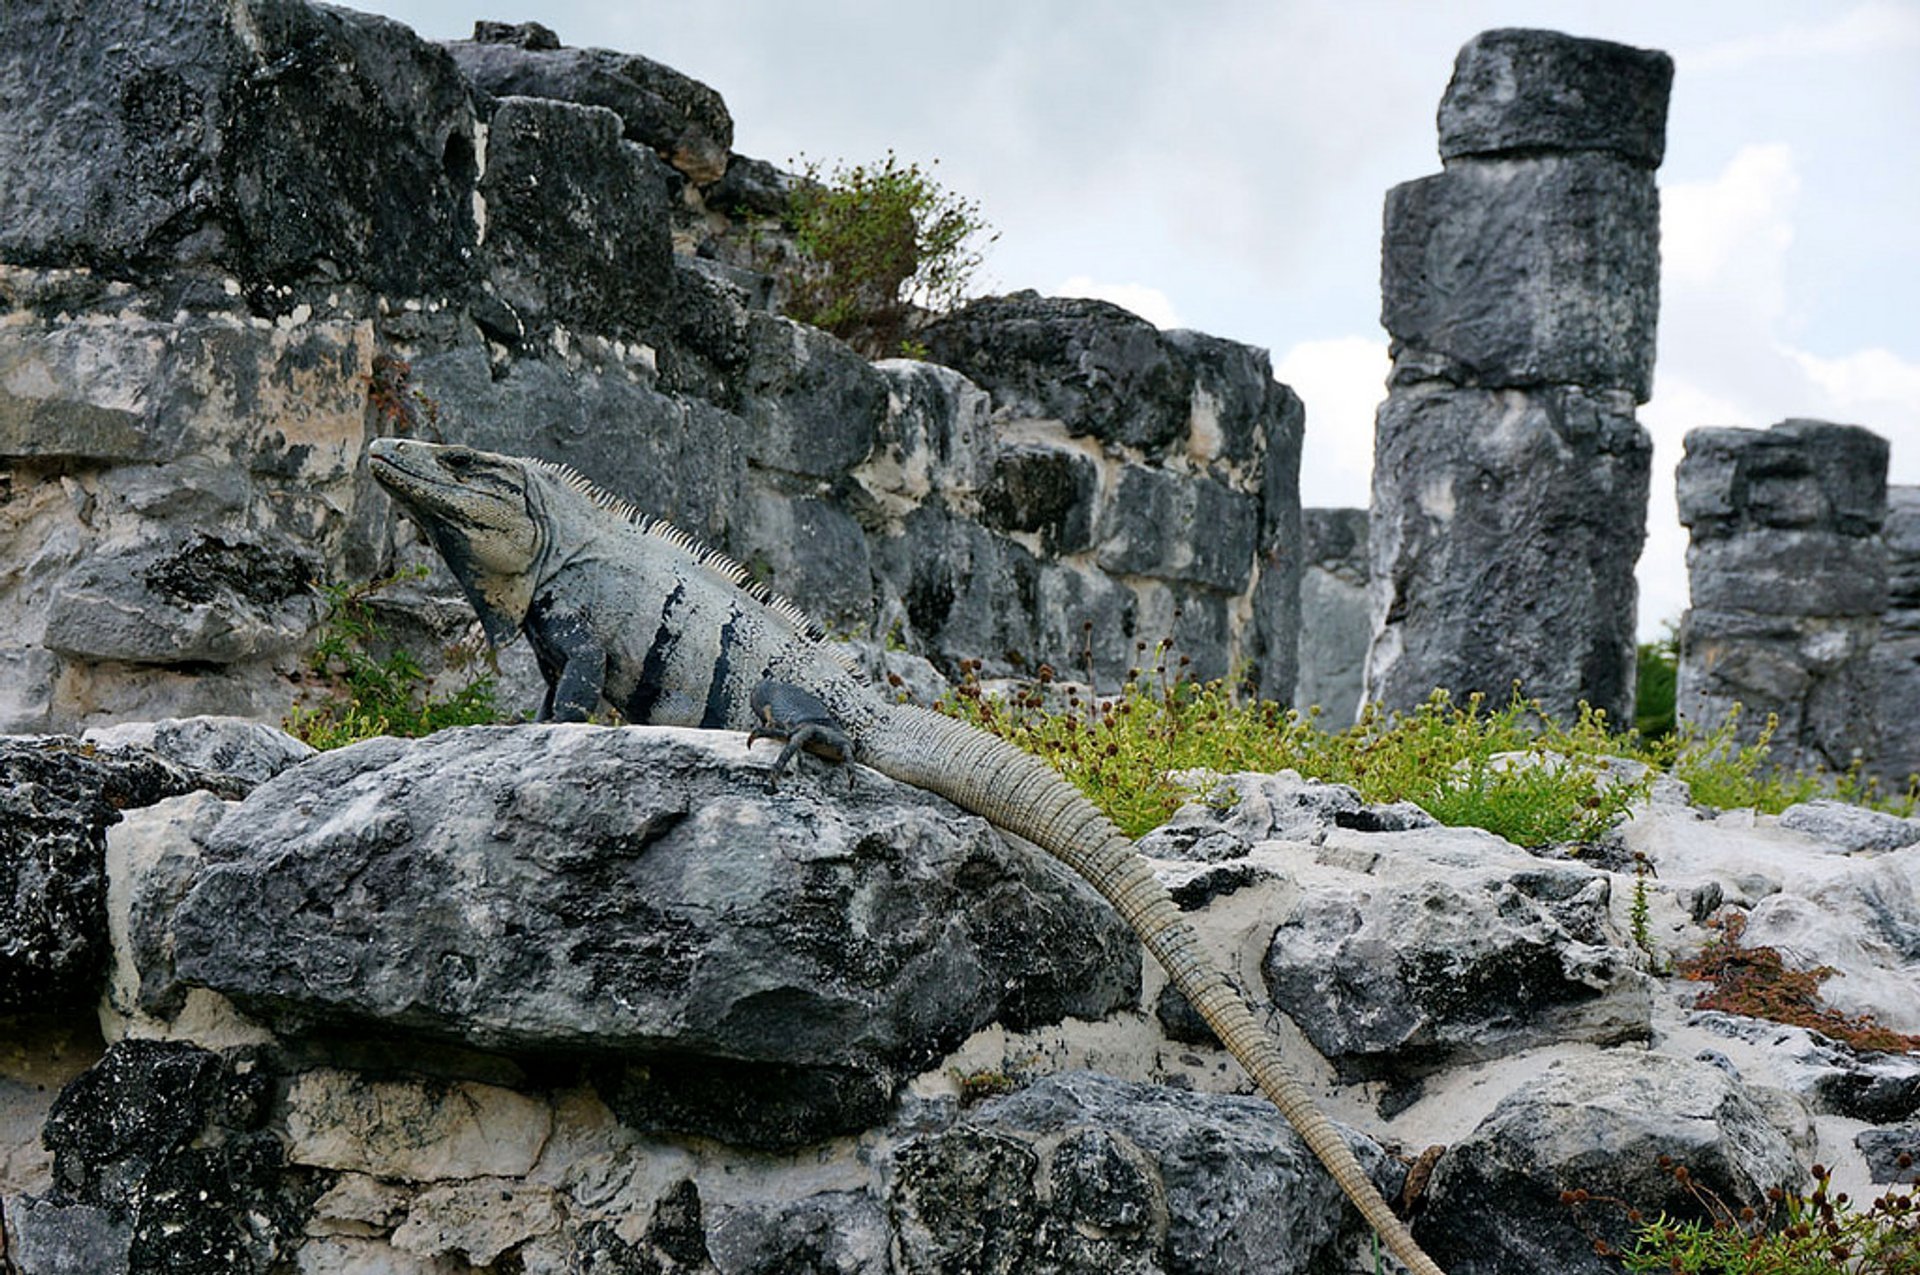 Leguanes in El Rey Ruinen